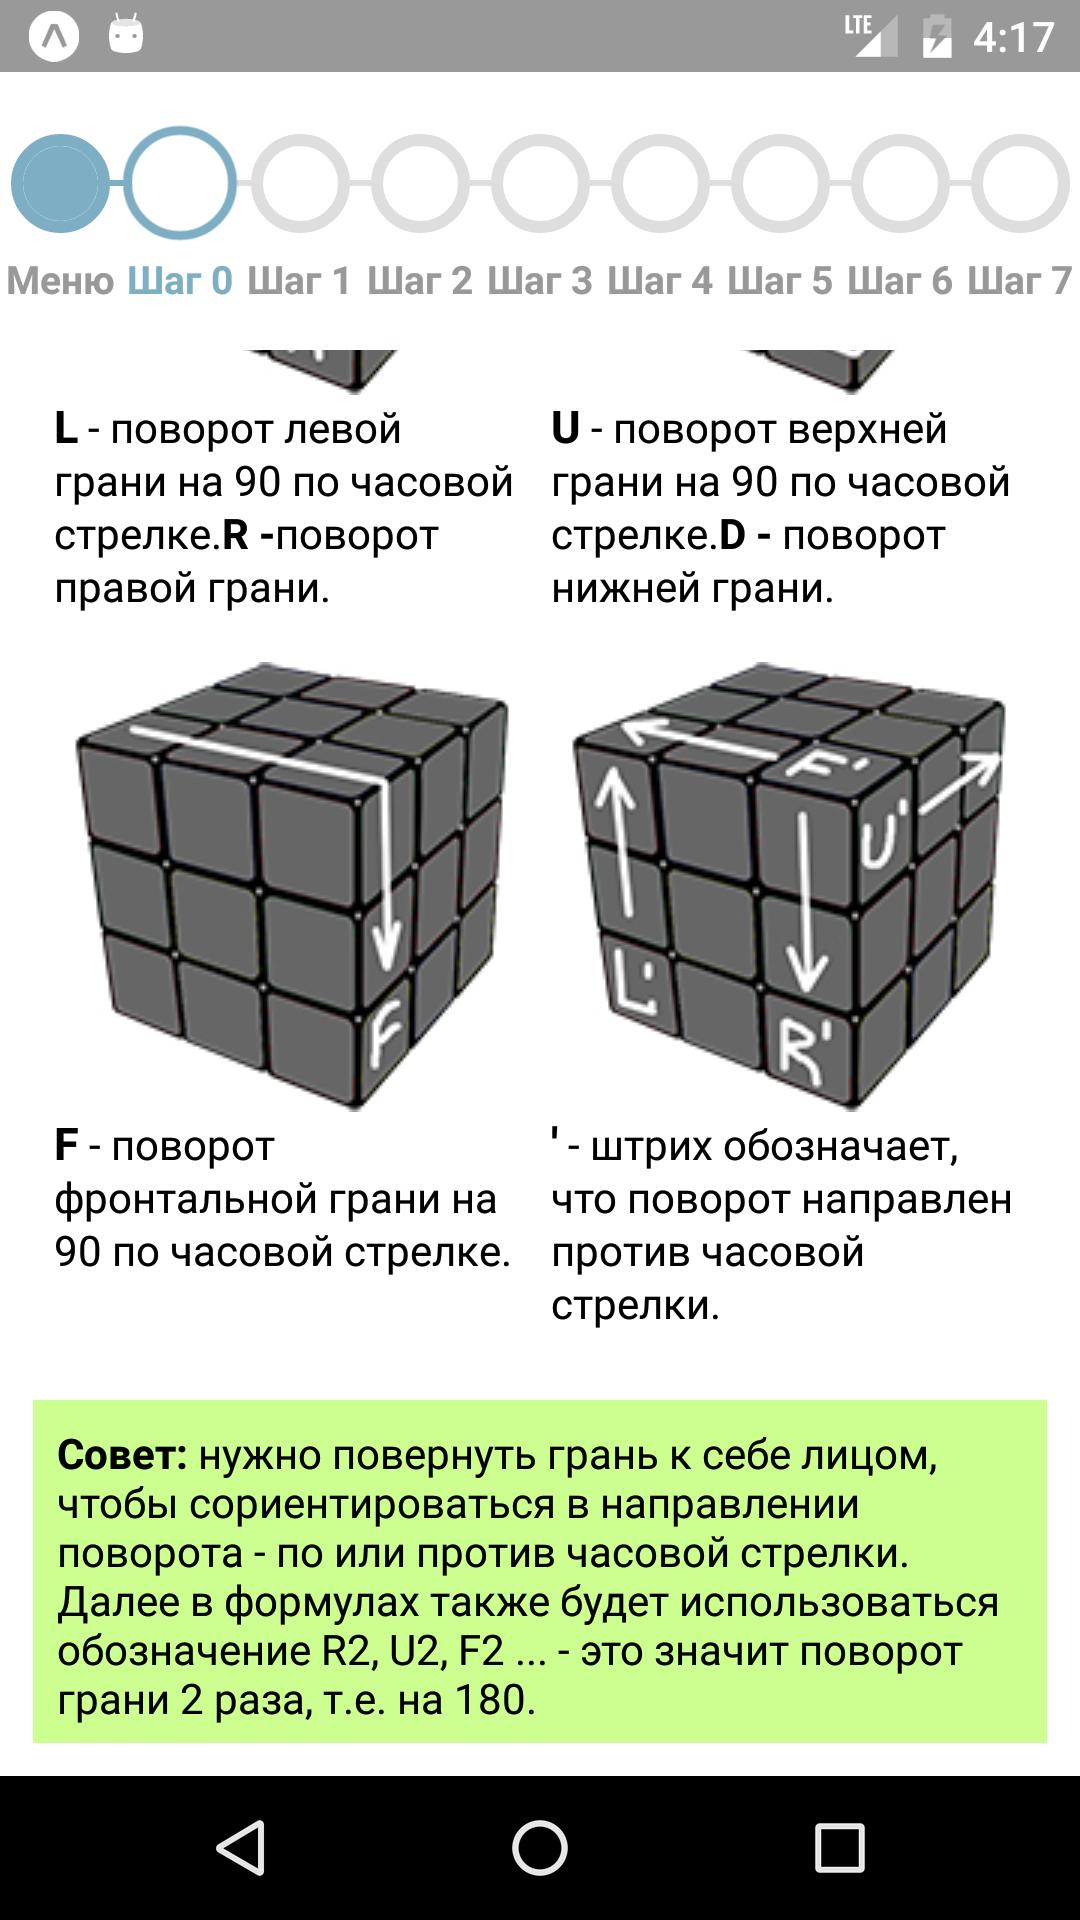 Кубик рубика как собирать легкая инструкция. Кубик Рубика 3х3 инструкция для начинающих. Как собрать кубик Рубика 3х3 алгоритм. Инструкция сборки кубика Рубика 3х3. Схема кубика Рубика 3х3 для начинающих.